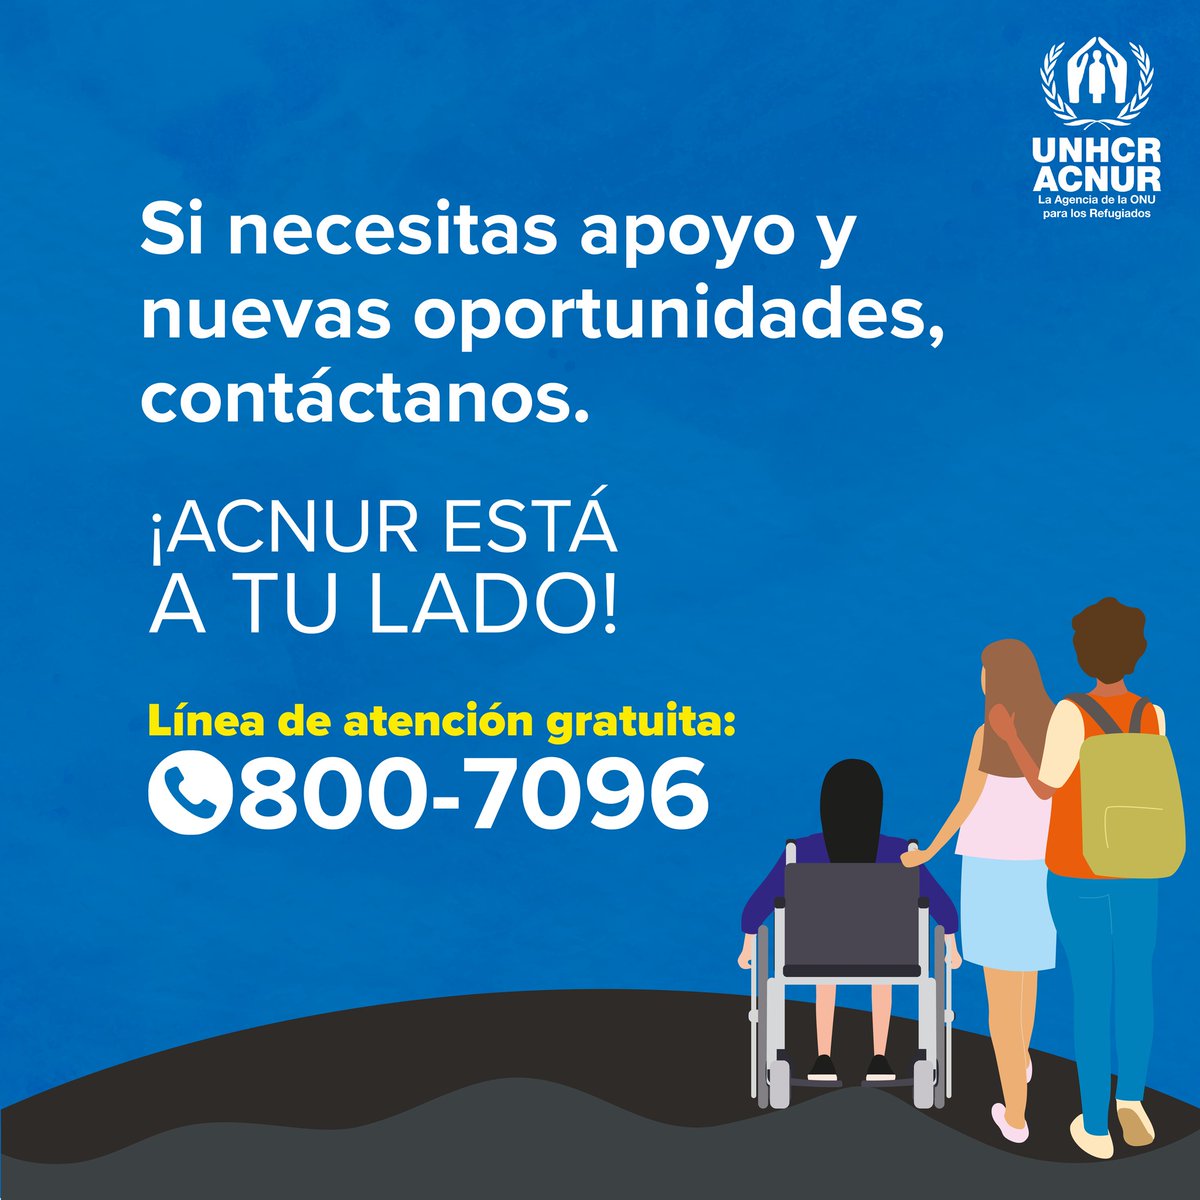 🏡 @ACNUR_es en El Salvador informa, orienta, acompaña y apoya a las personas que tuvieron que huir de sus hogares para que reconstruyan sus vidas. #ATuLado

Sigue nuestros canales oficiales:
☎️ Línea gratuita: 800-7096 
🌐 ayuda.acnur.org/elsalvador